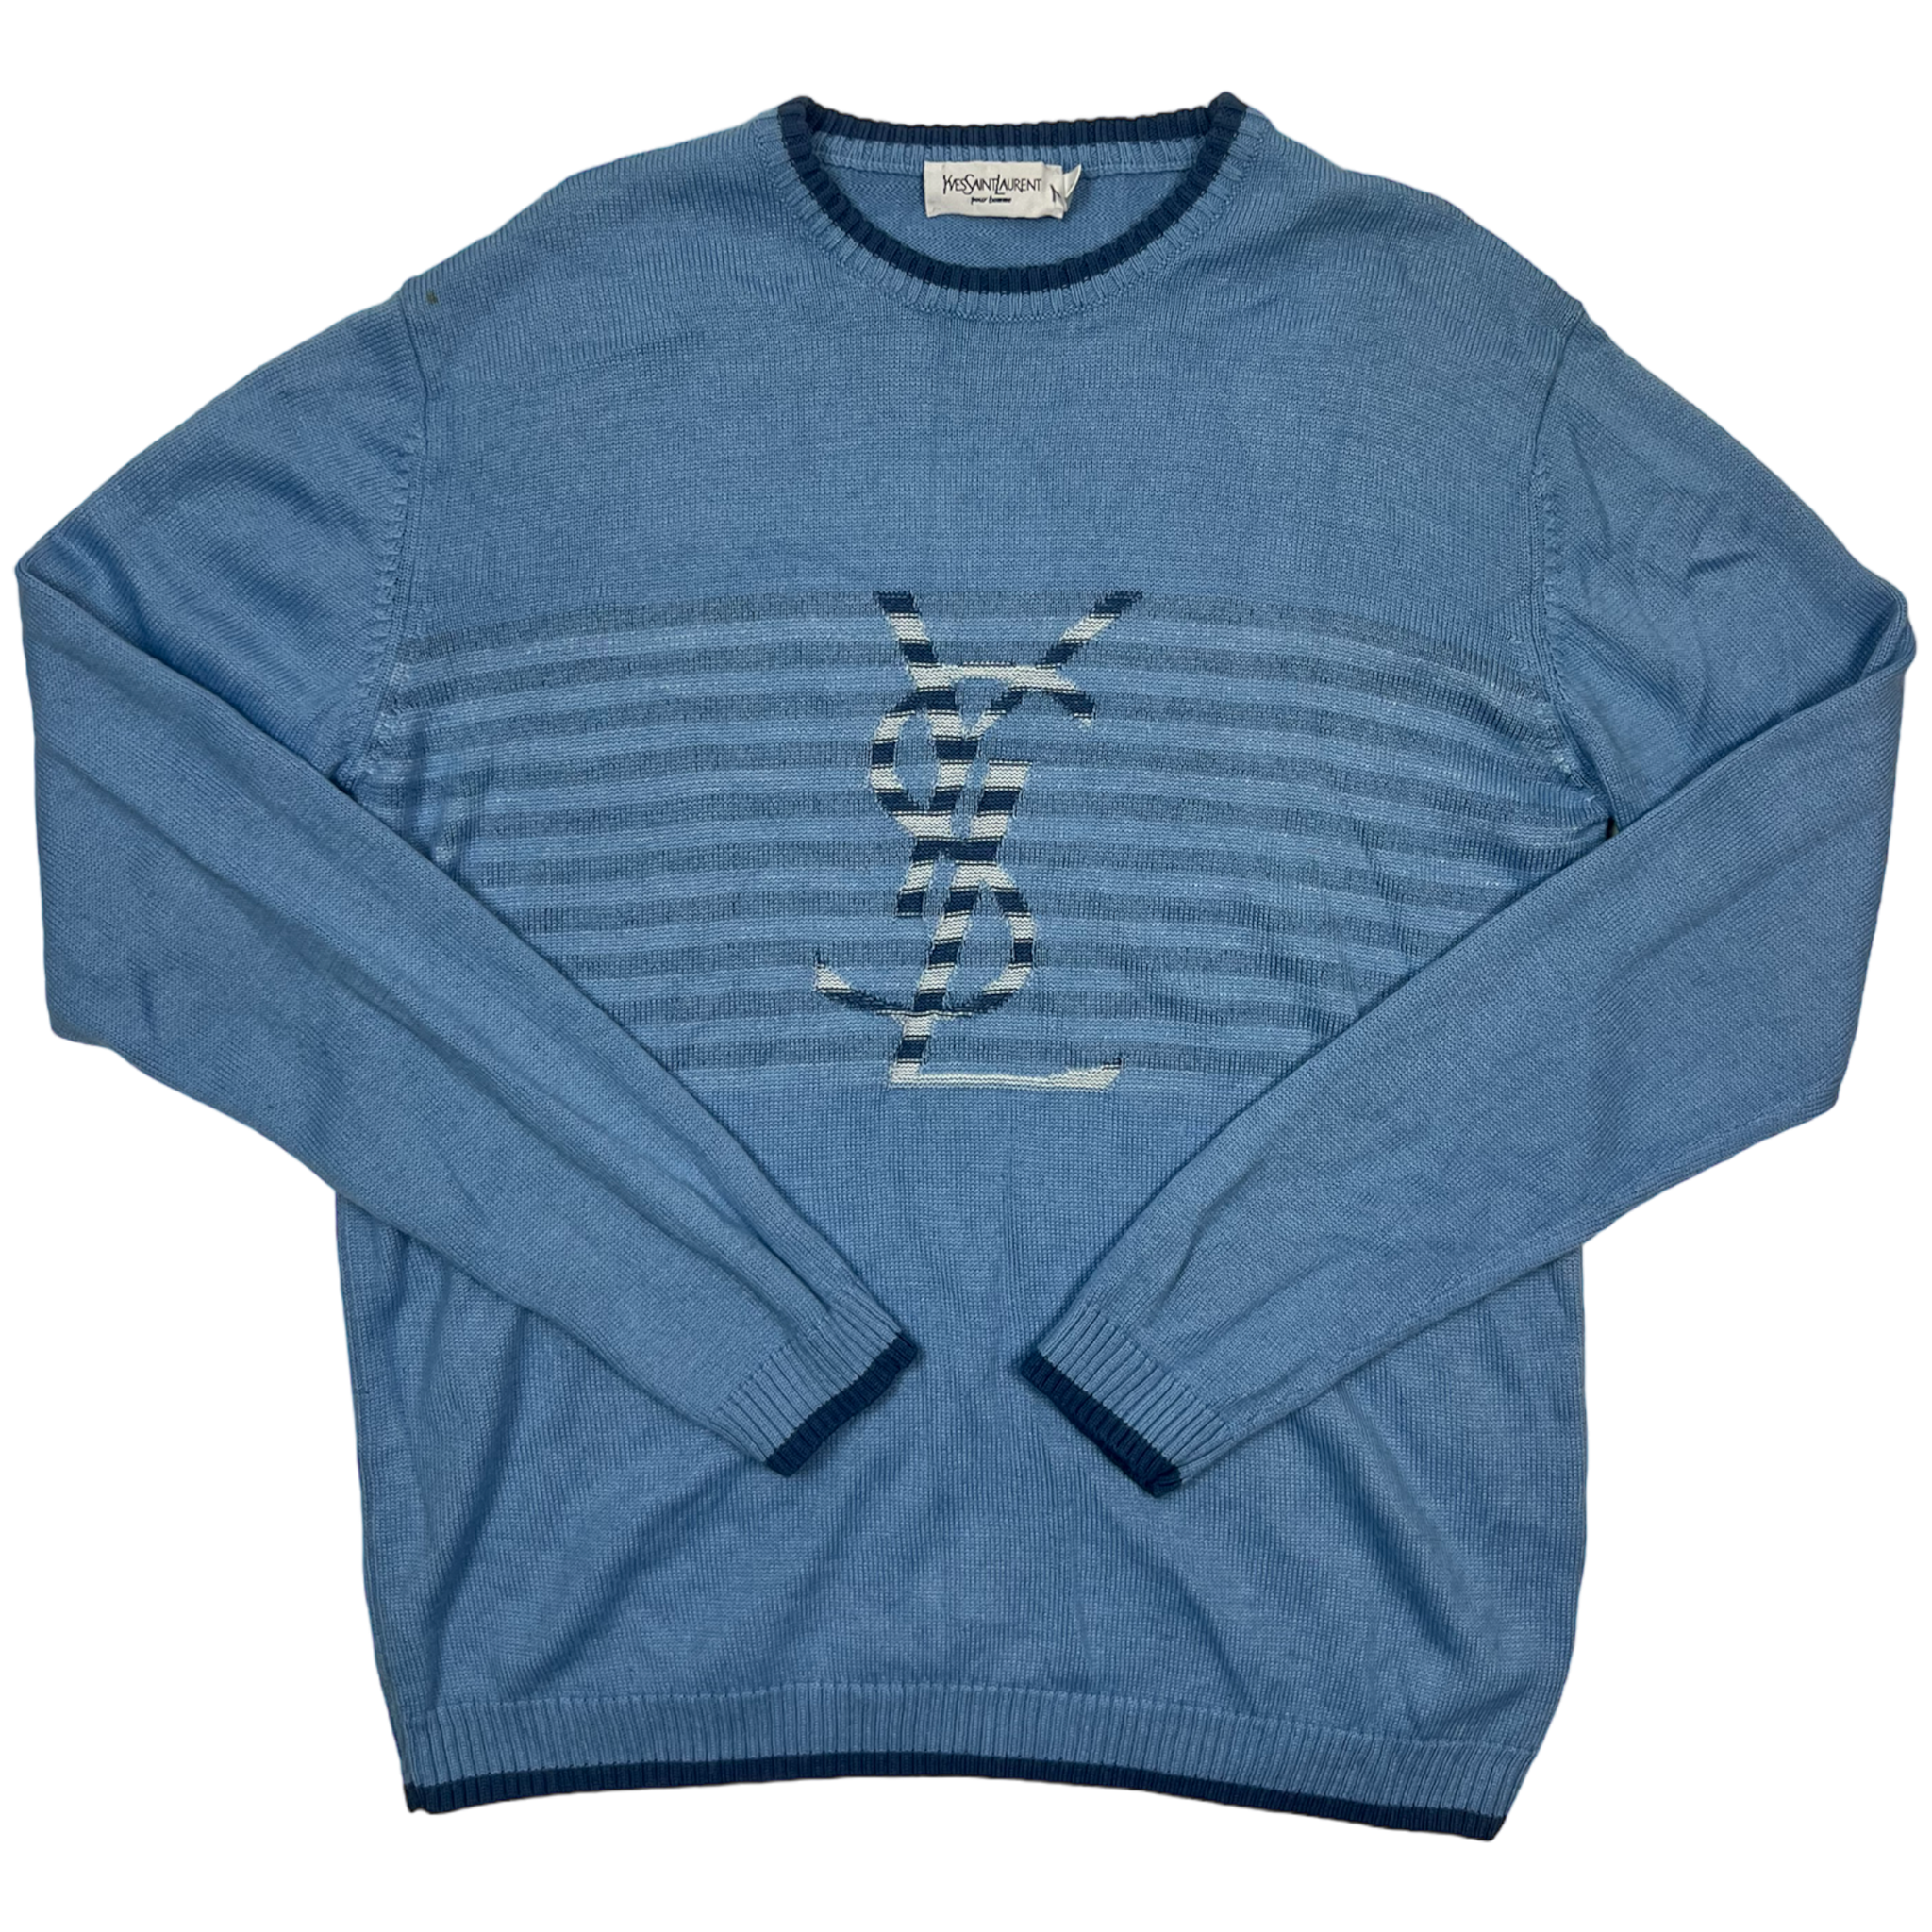 Yves Saint Laurent Sweater (L)